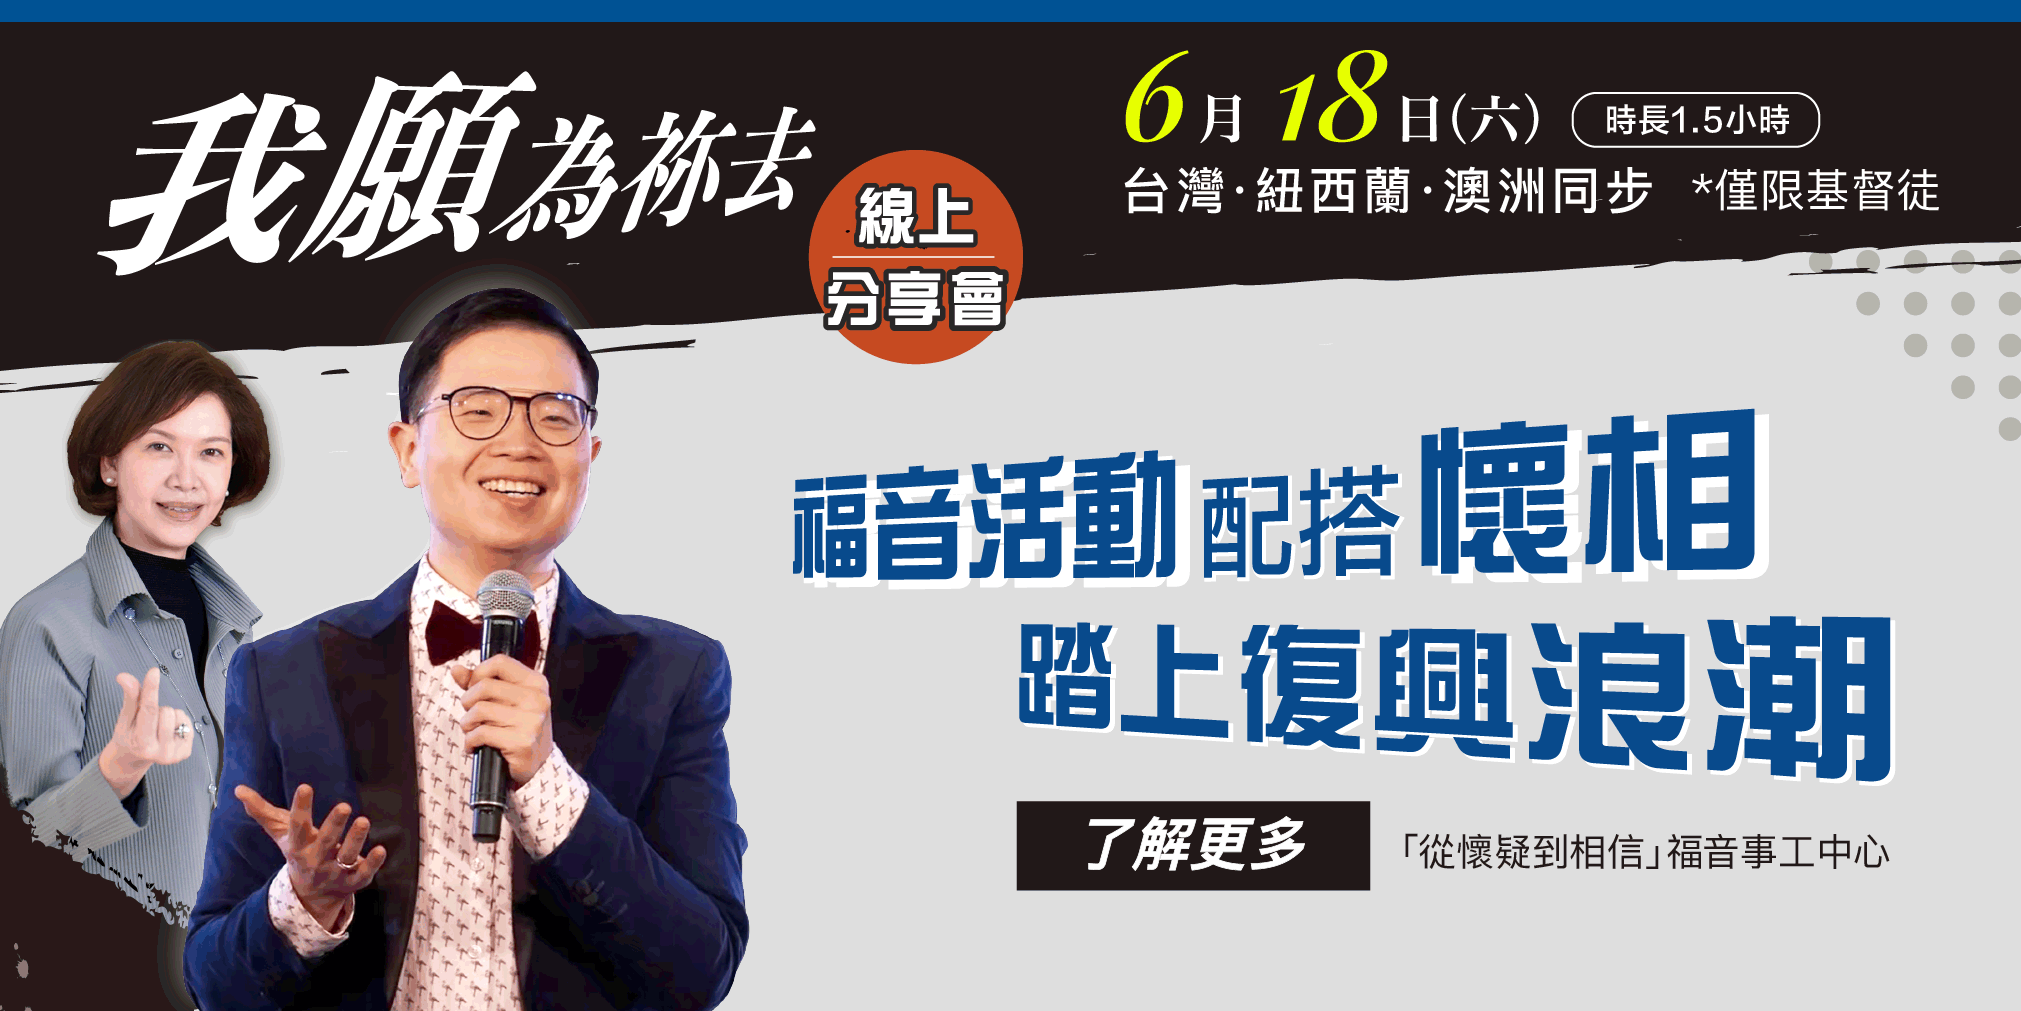 #84881 財團法人台北市傳理文教基金會 (5/22-28)  底部廣告